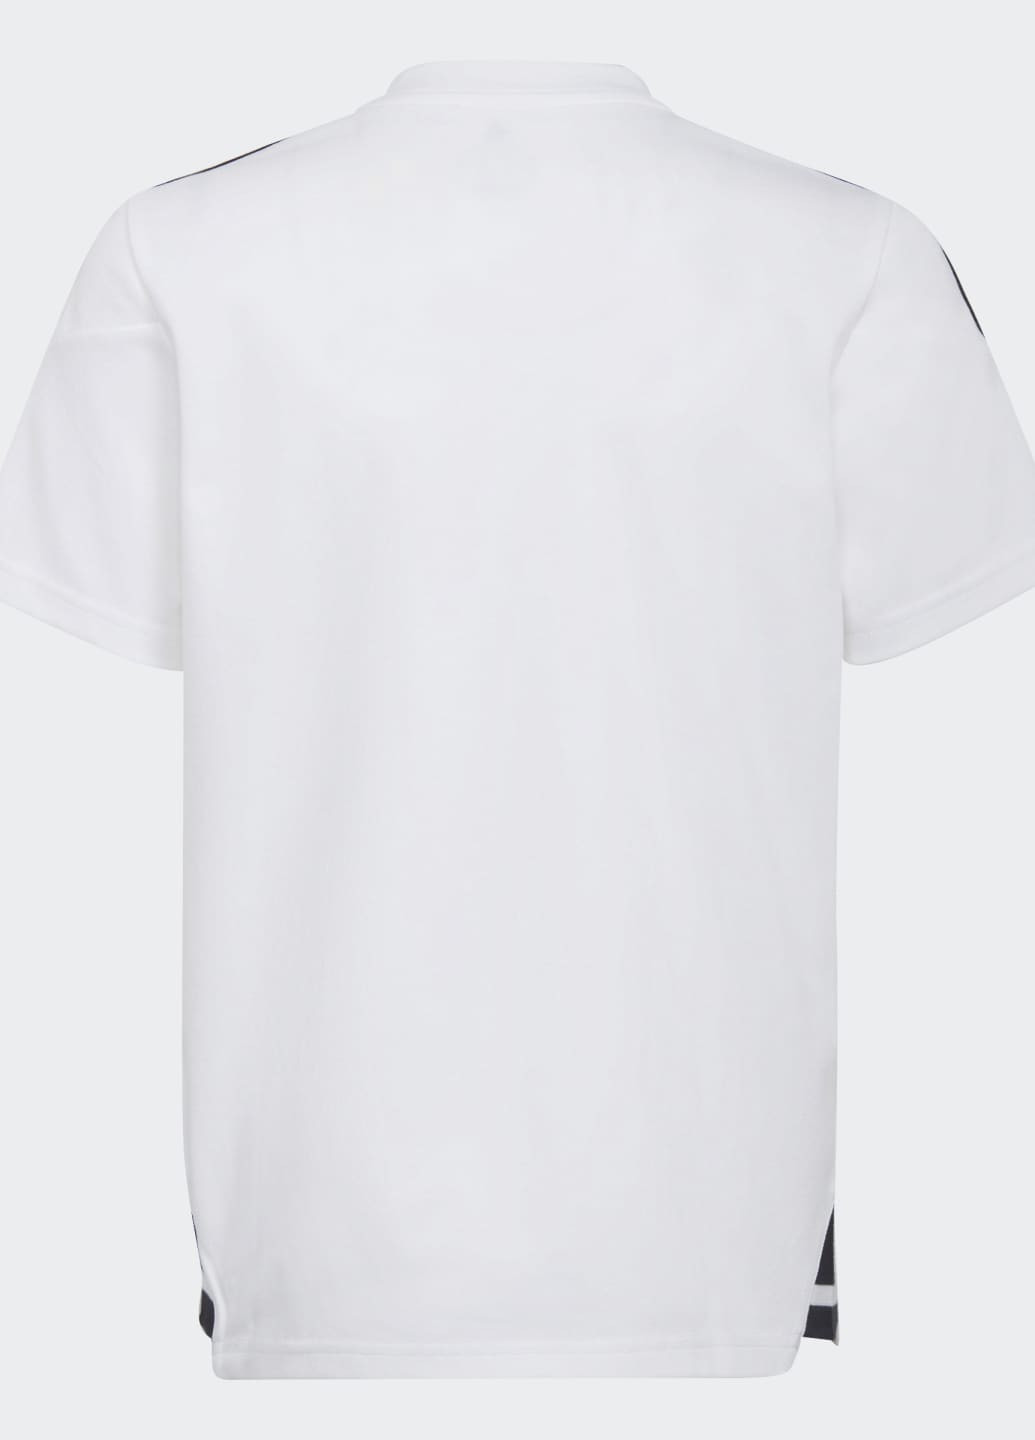 Белая демисезонная футболка поло condivo 22 adidas